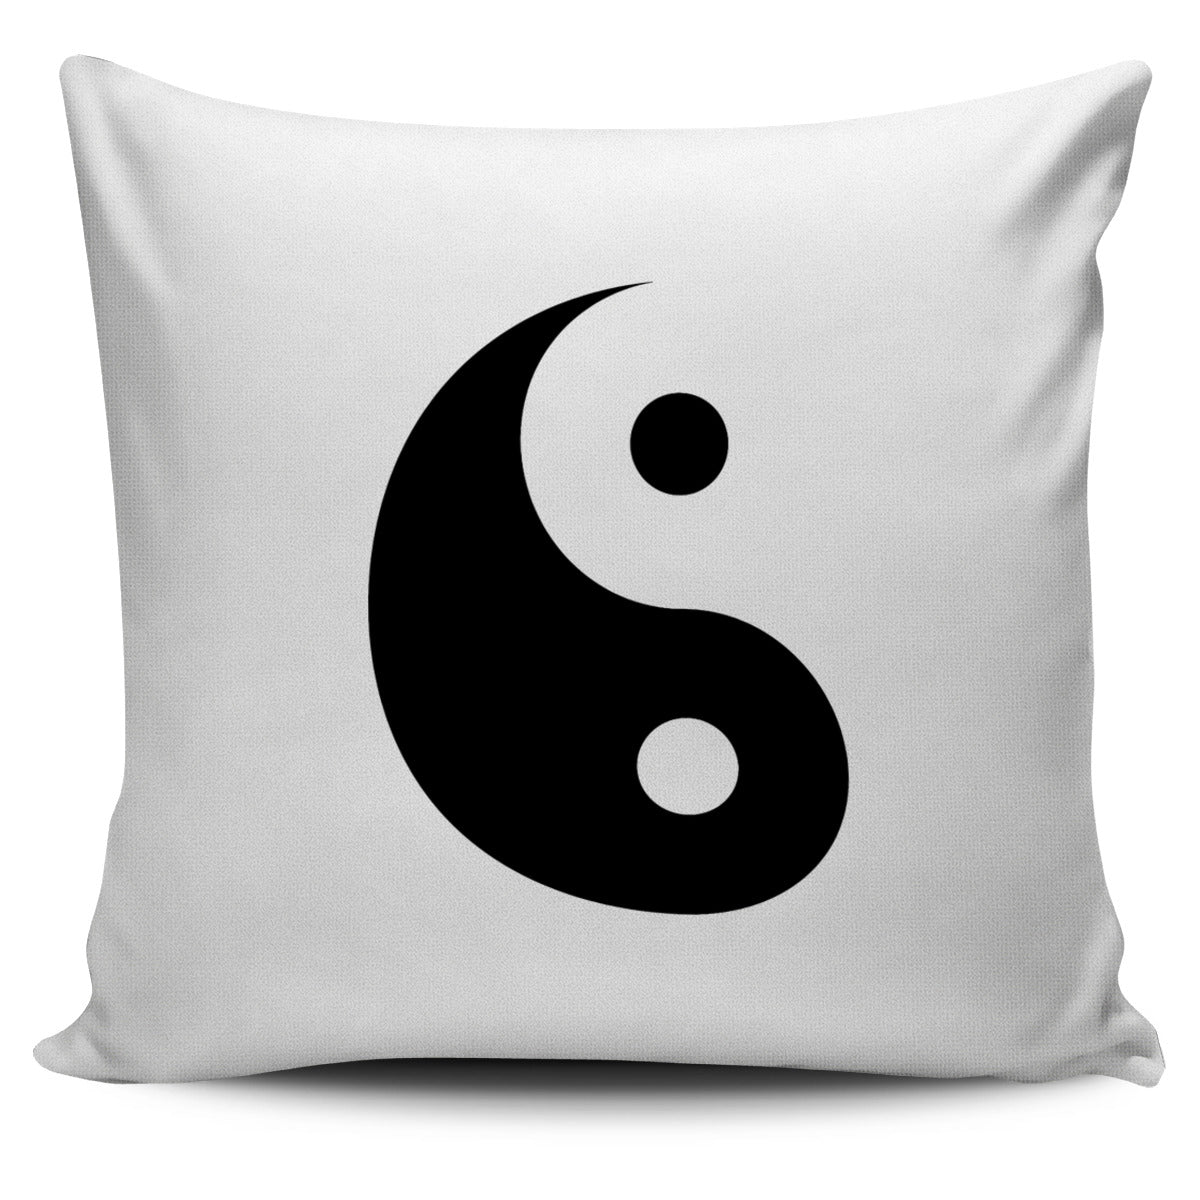 Yin Yang Pillow Cover